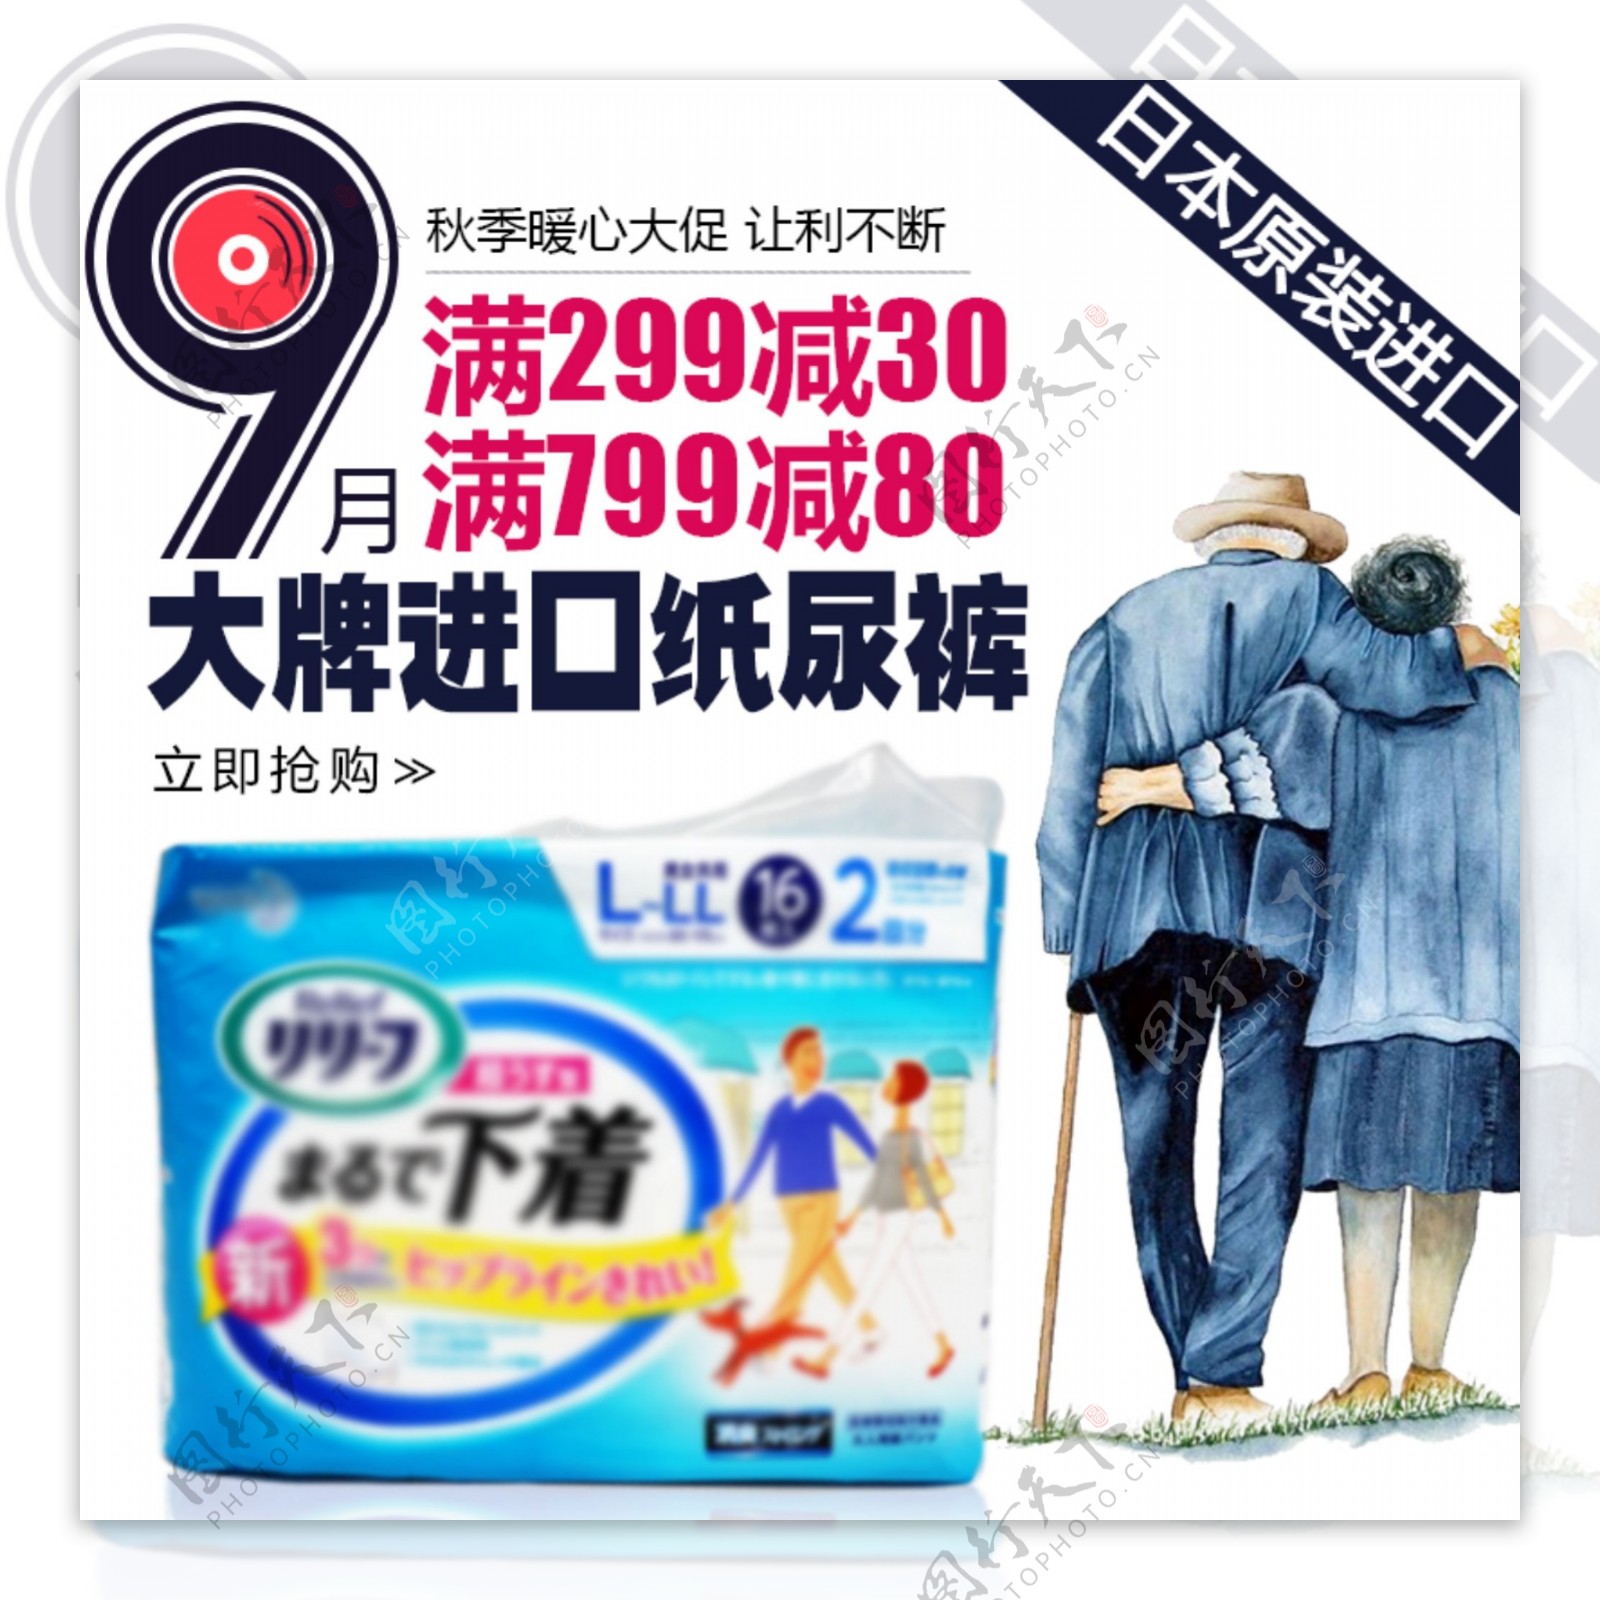 蓝色9月秋季成人纸尿裤老人日本进口满减促销活动直通车钻展主图